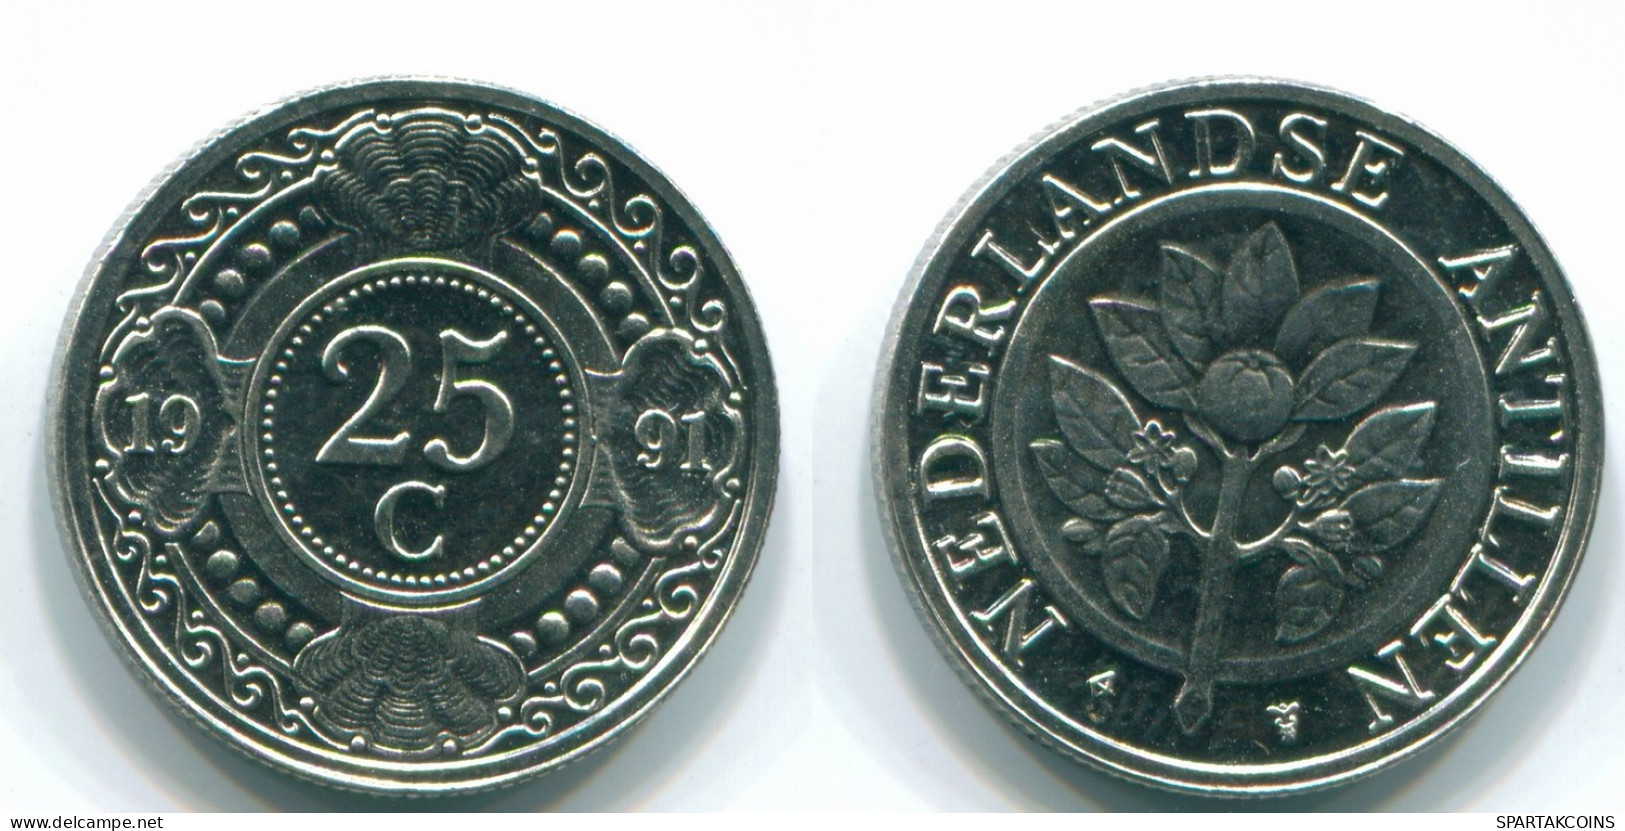 25 CENTS 1991 NIEDERLÄNDISCHE ANTILLEN Nickel Koloniale Münze #S11279.D.A - Antillas Neerlandesas